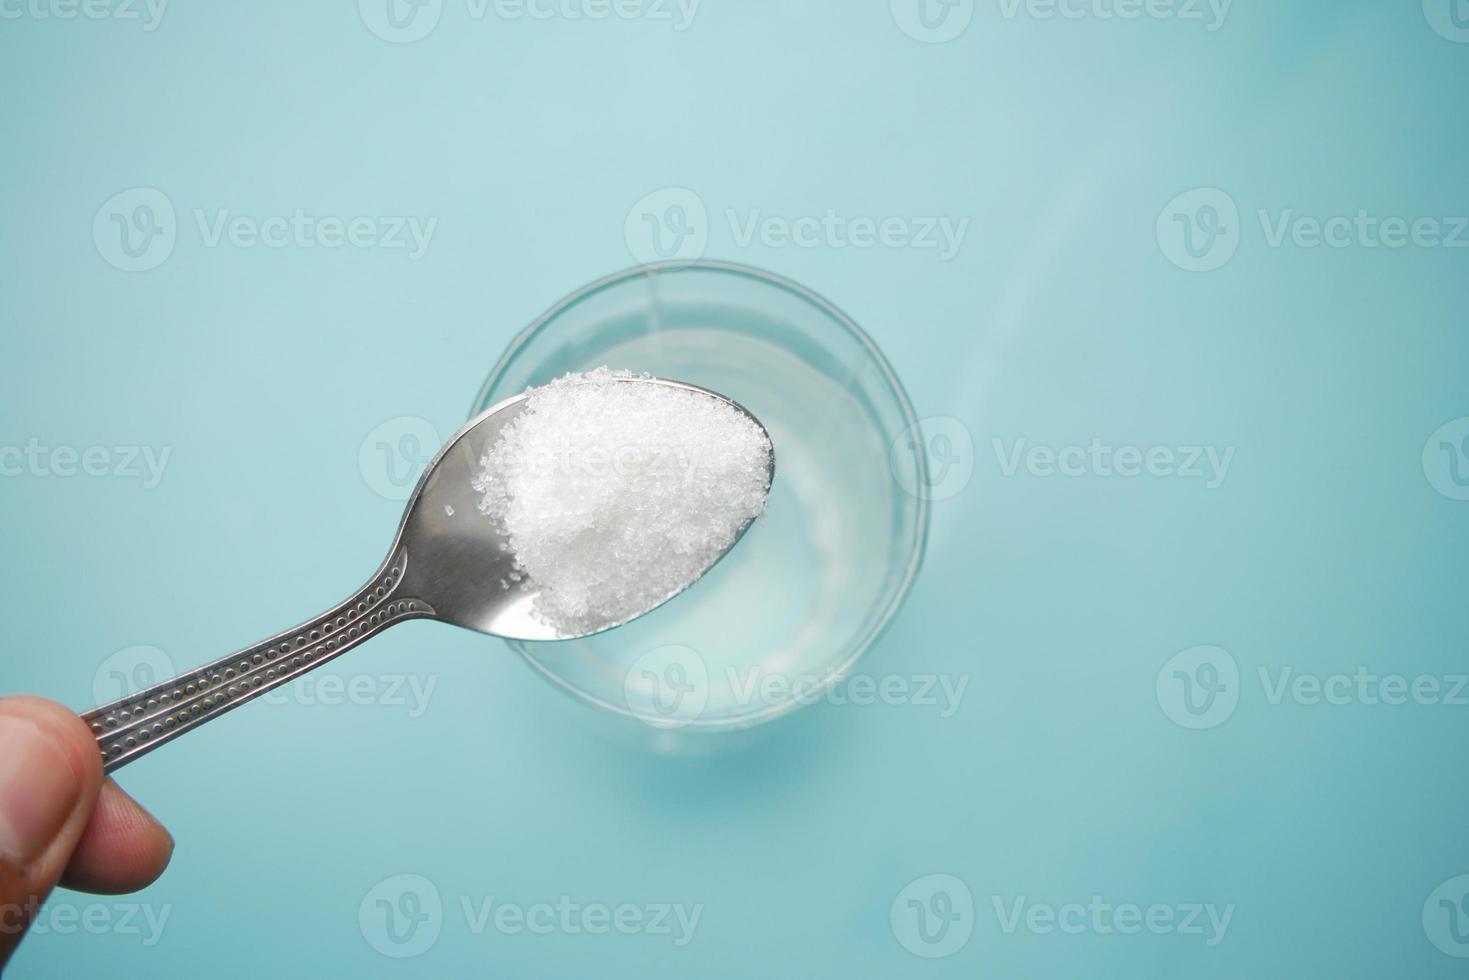 hälla vitt socker i ett glas vatten på bordet foto